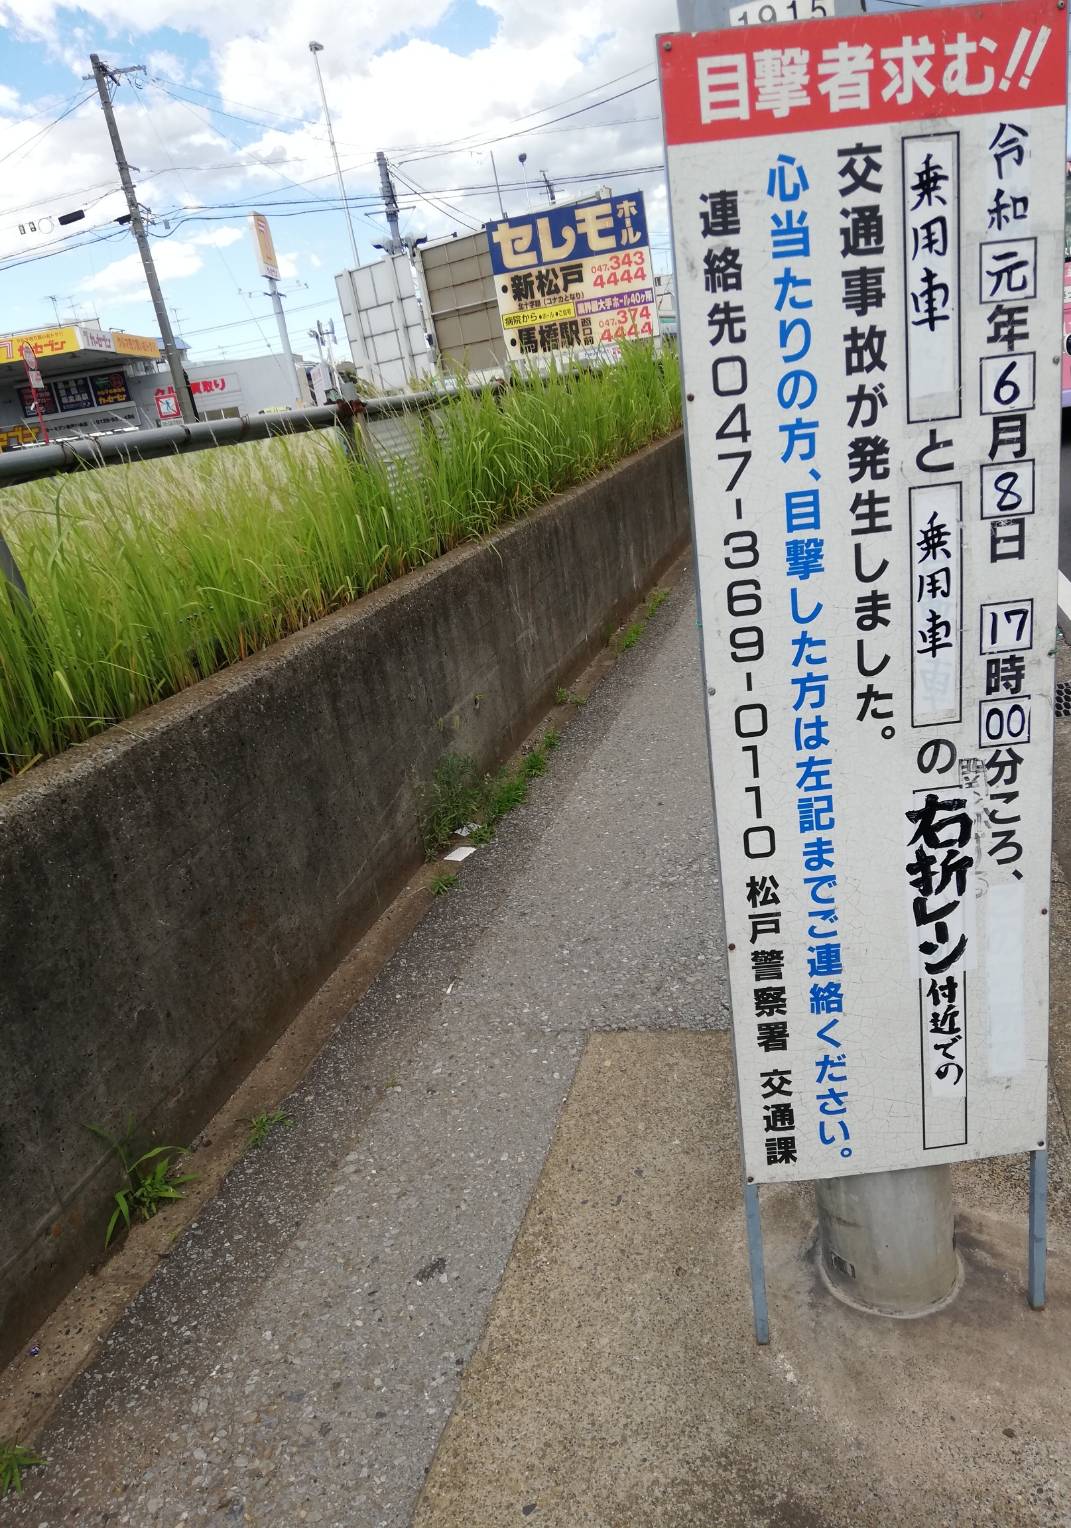 岩瀬こ線橋から国道6号へ合流する右折レーンで6月8日に交通事故発生 松戸ロード 松戸の地域情報